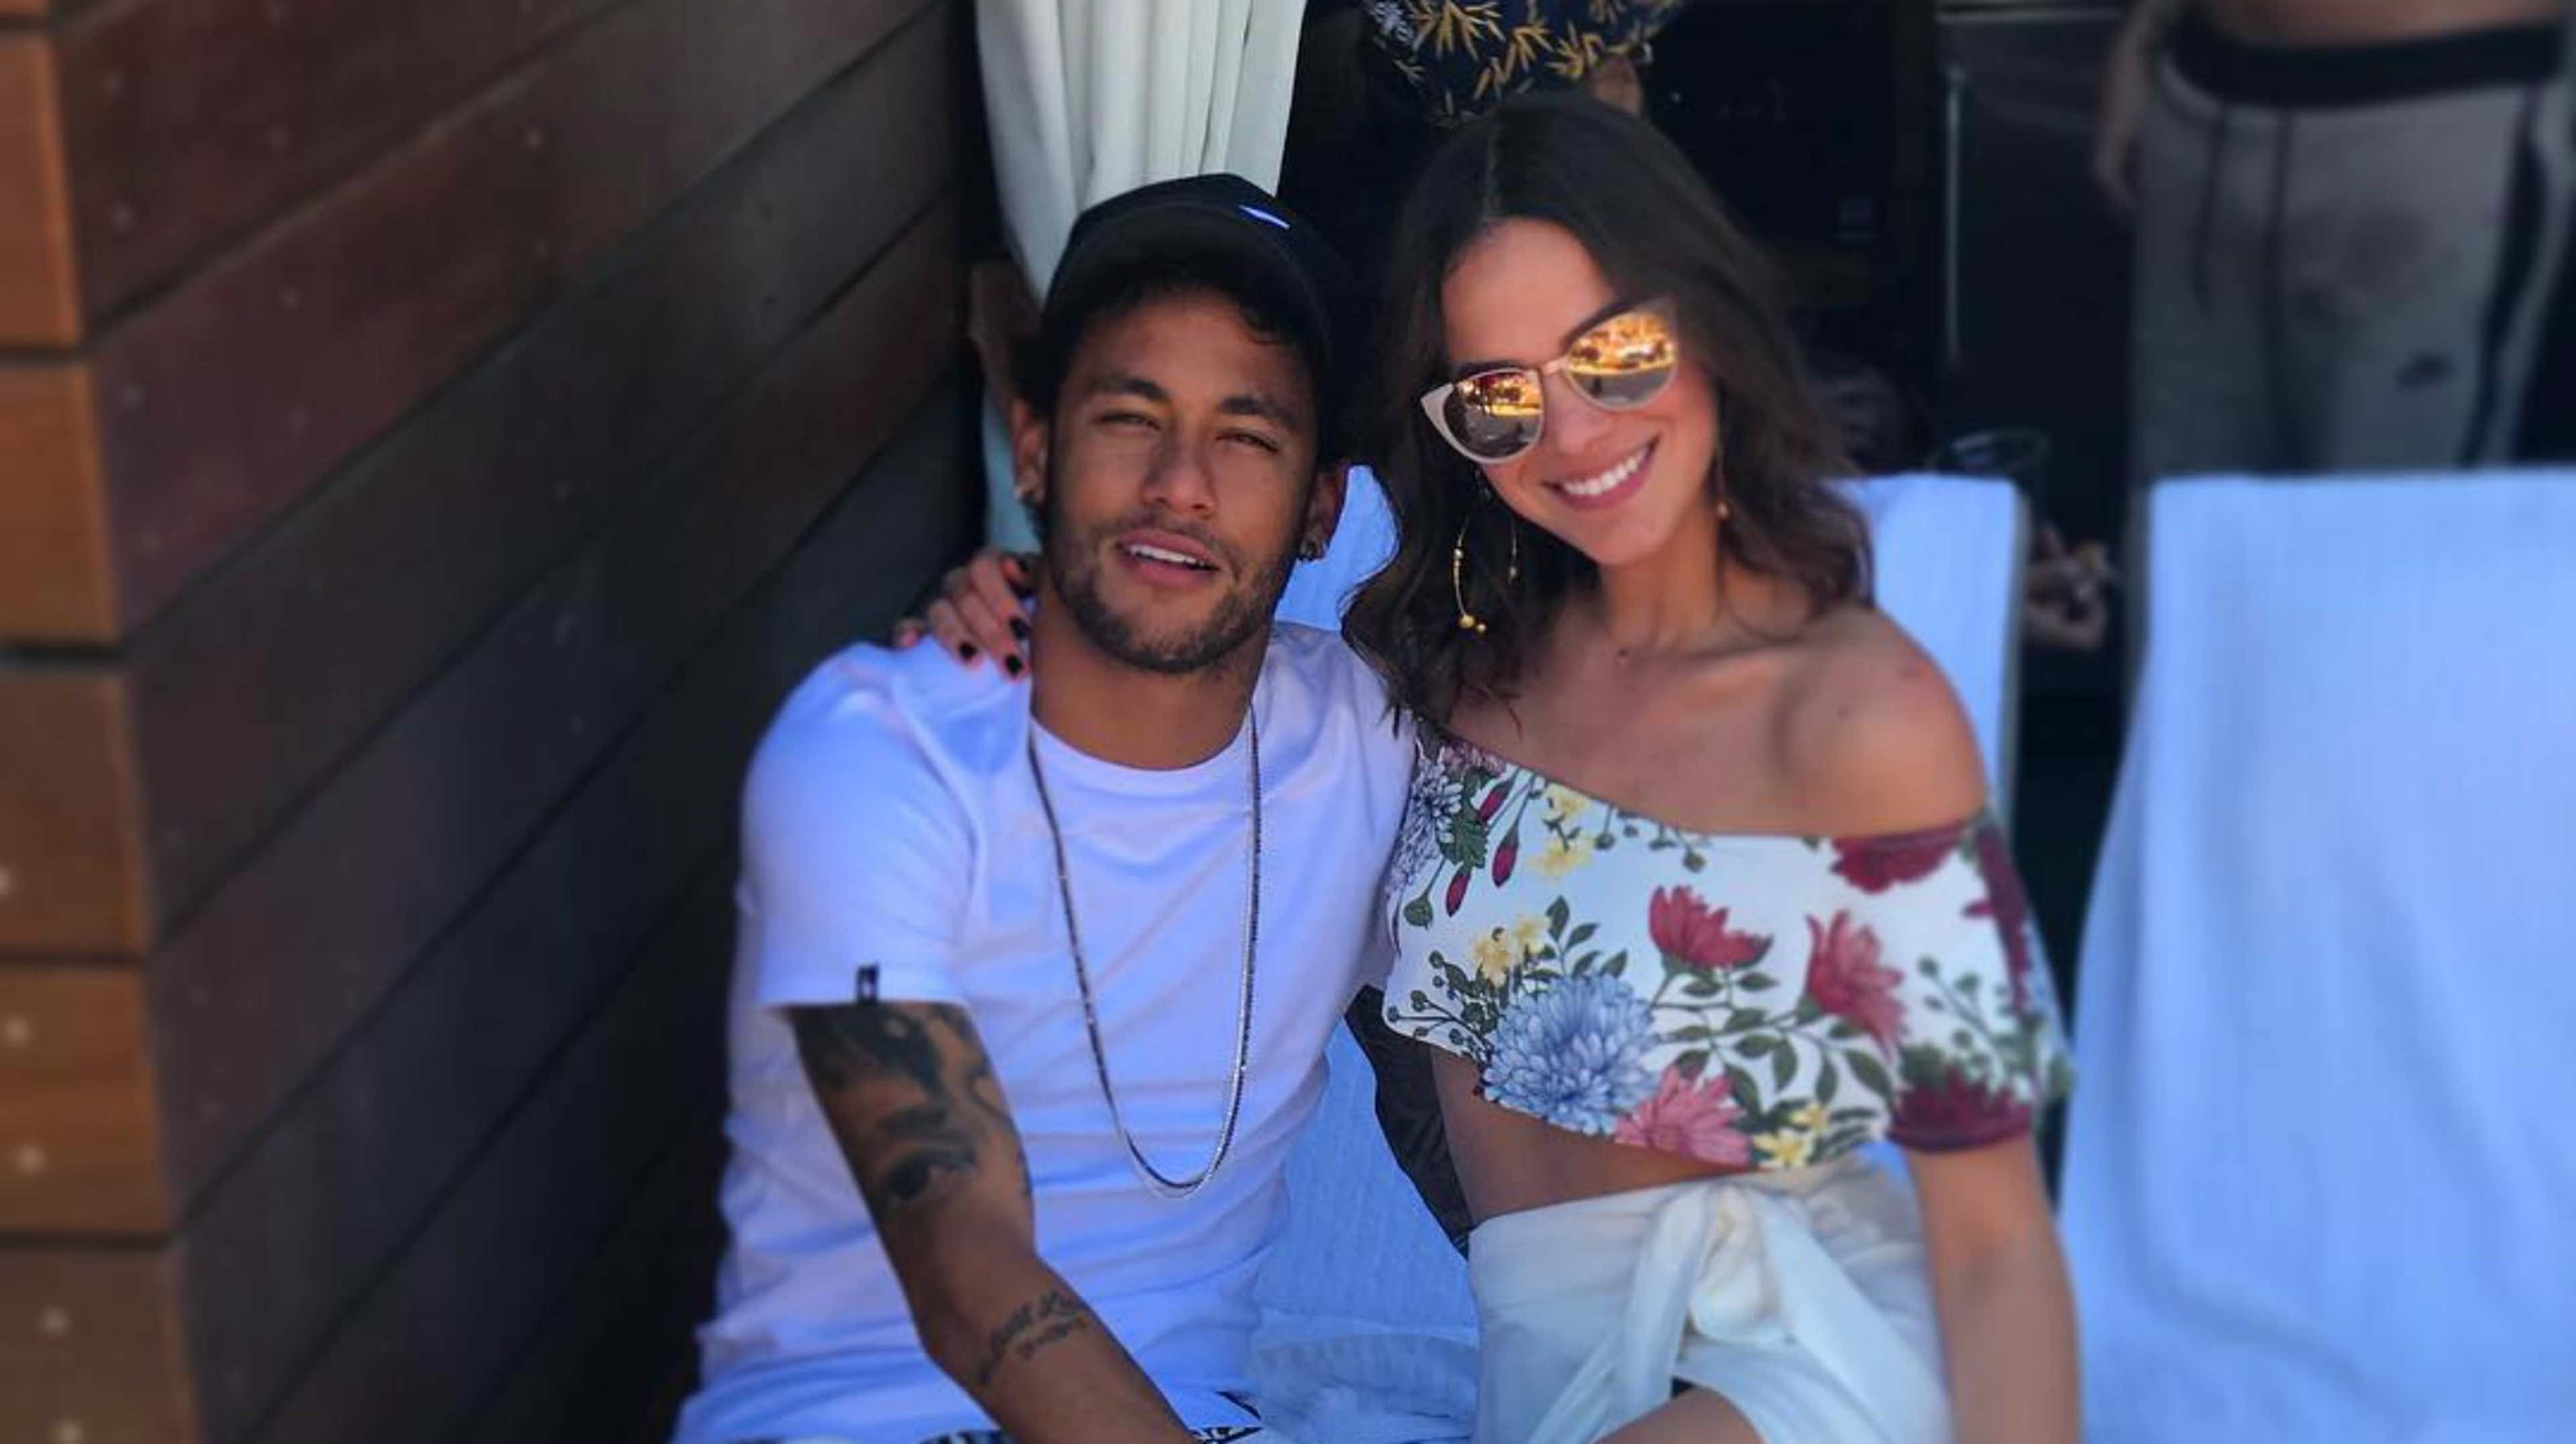 Neymar E Bruna Marquezine Na Arabia Saudita #Neymar #brunamarquezine #